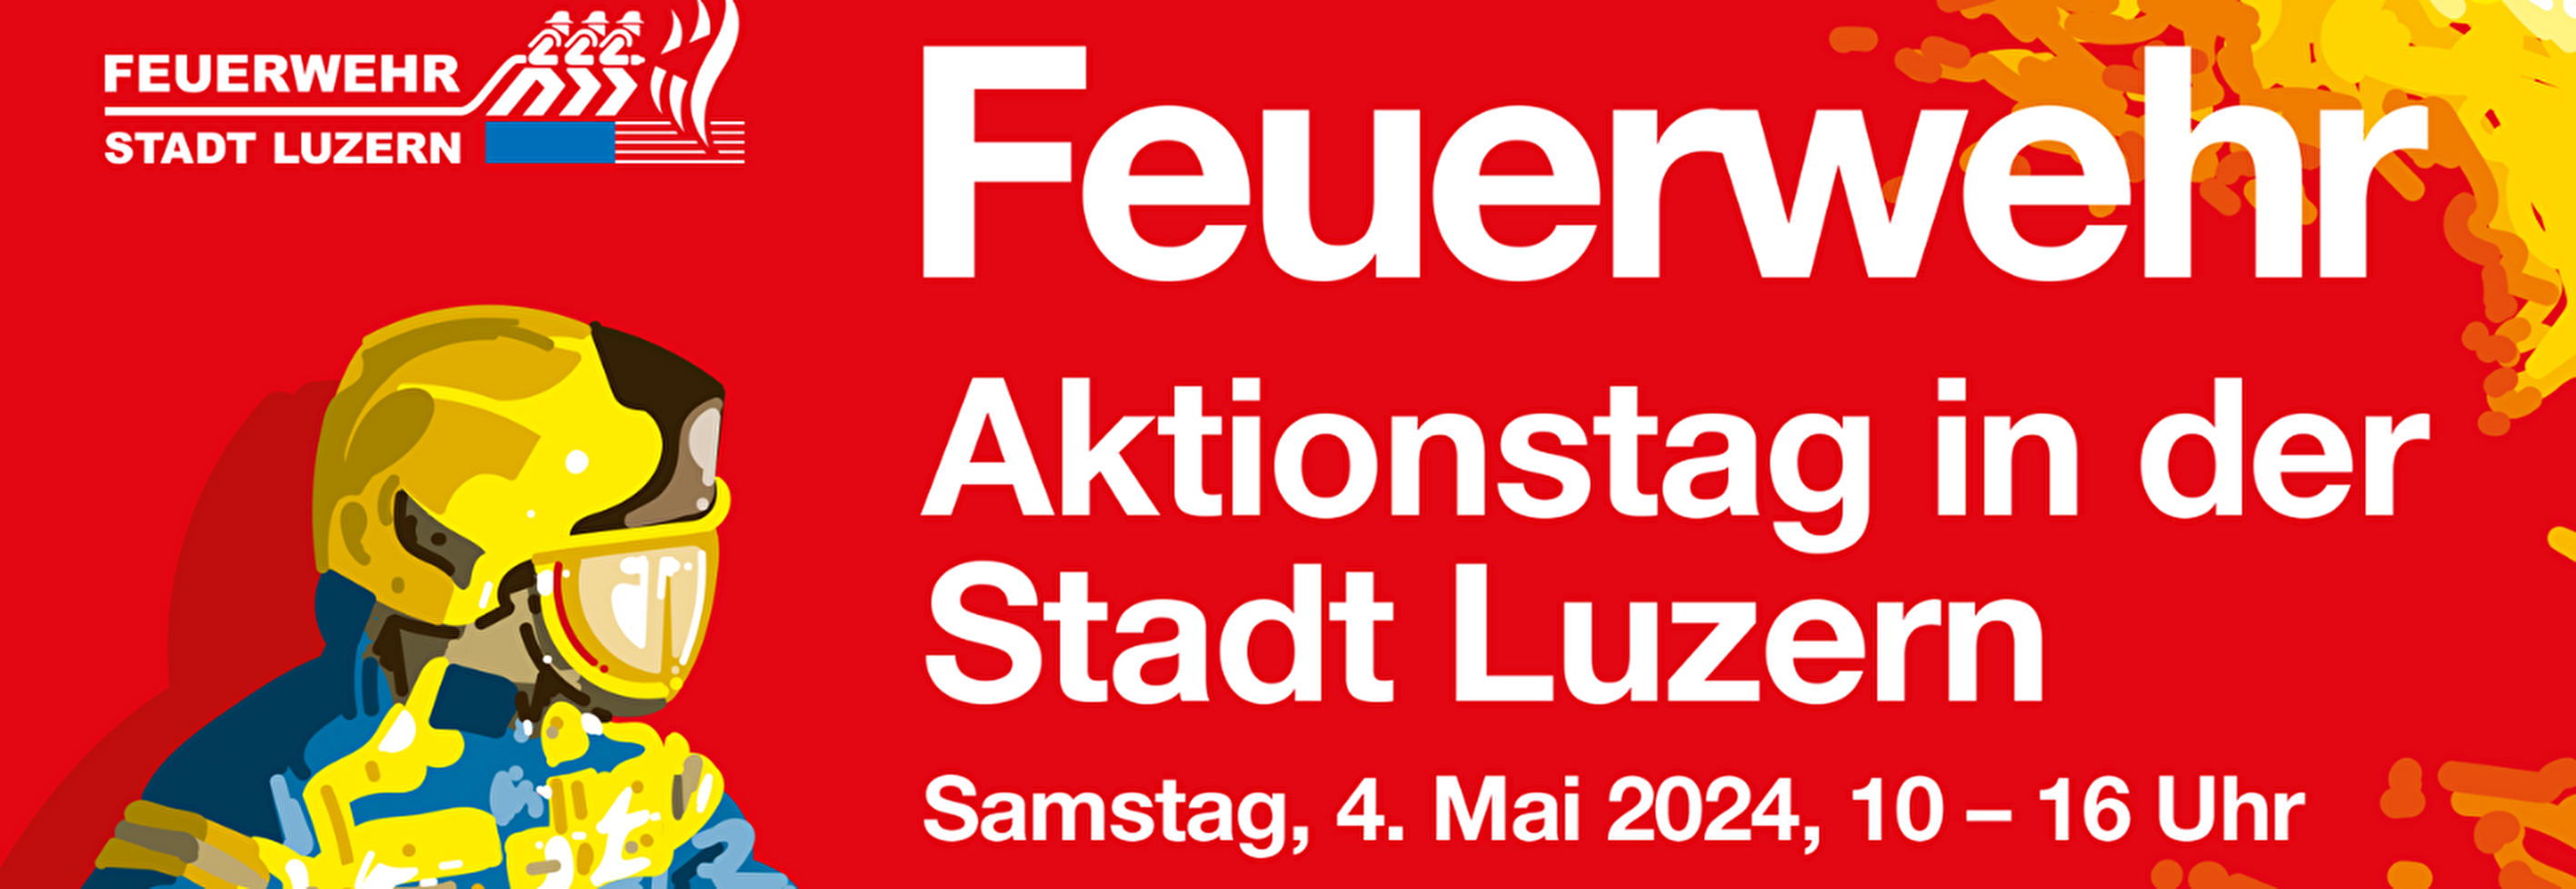 Feuerwehr Aktionstag in der Stadt Luzern